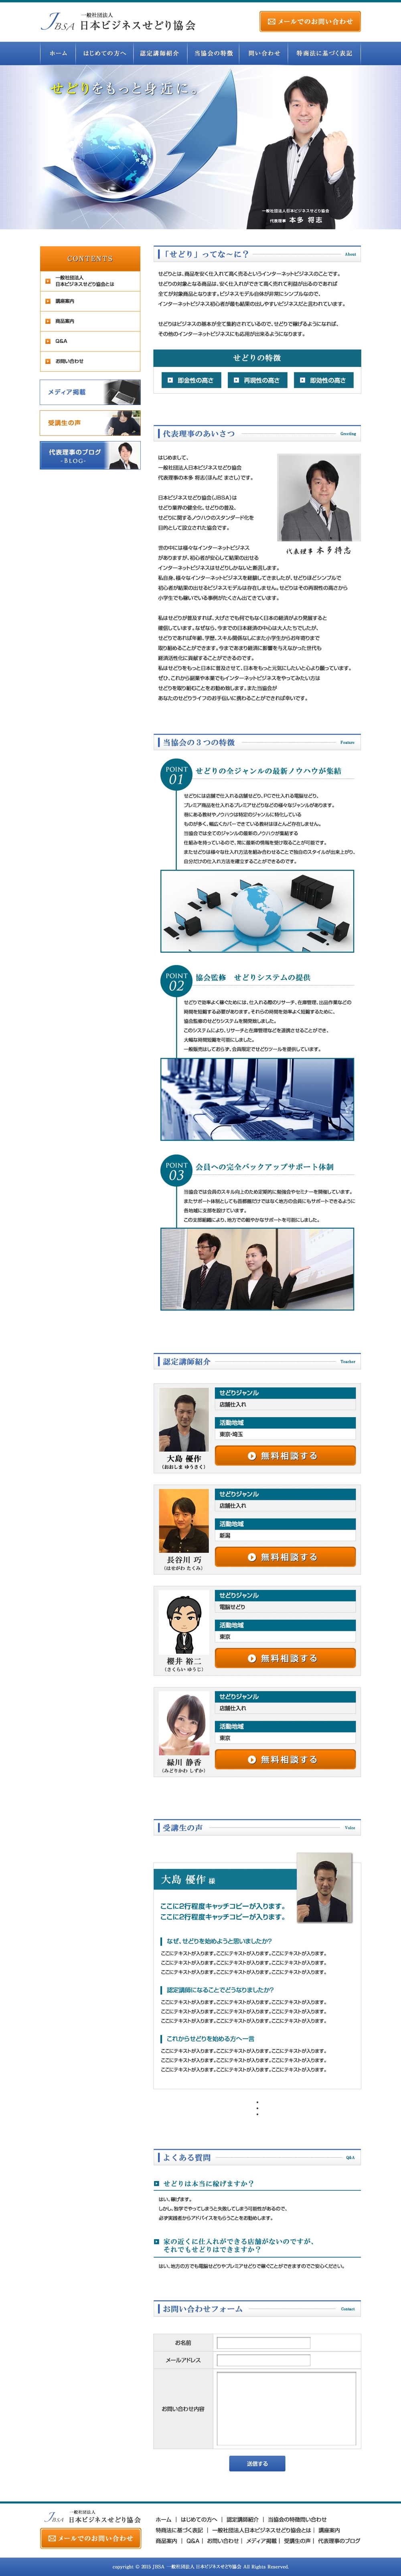 日本ビジネスせどり協会のホームページ作成